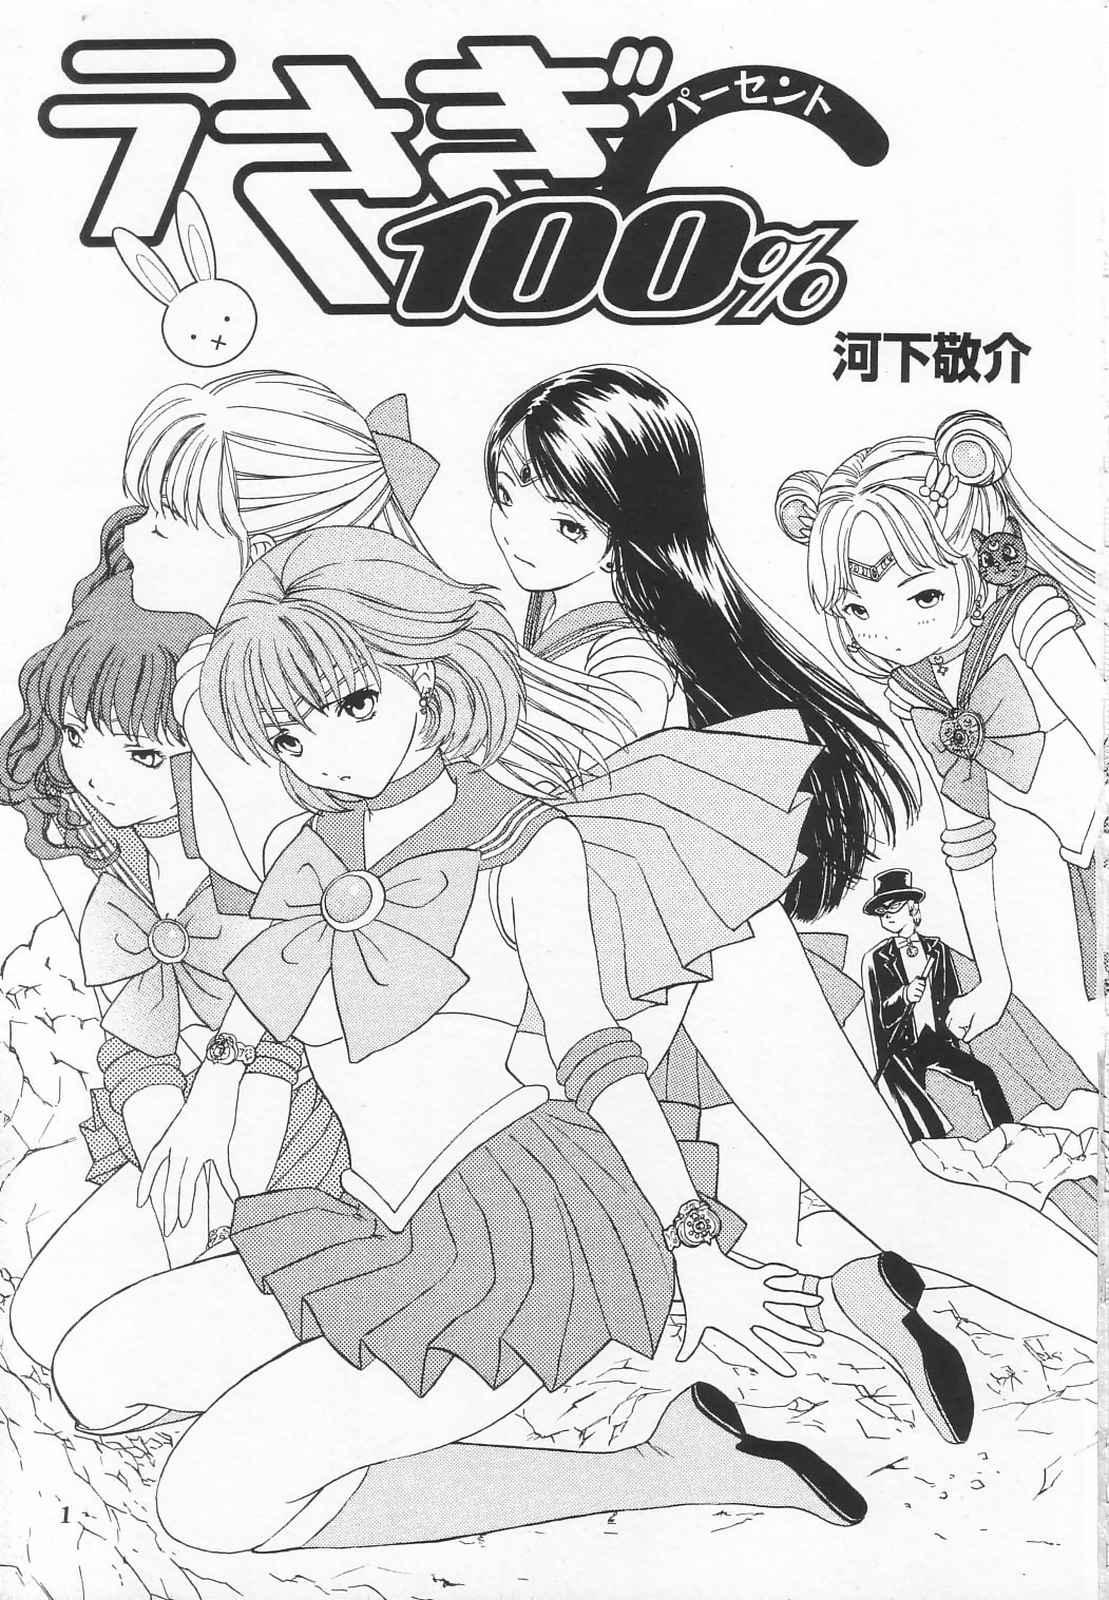 Amiga Tokusatsu Magazine x 2003 Fuyu Gou - Sailor moon Ichigo 100 Public Sex - Page 3